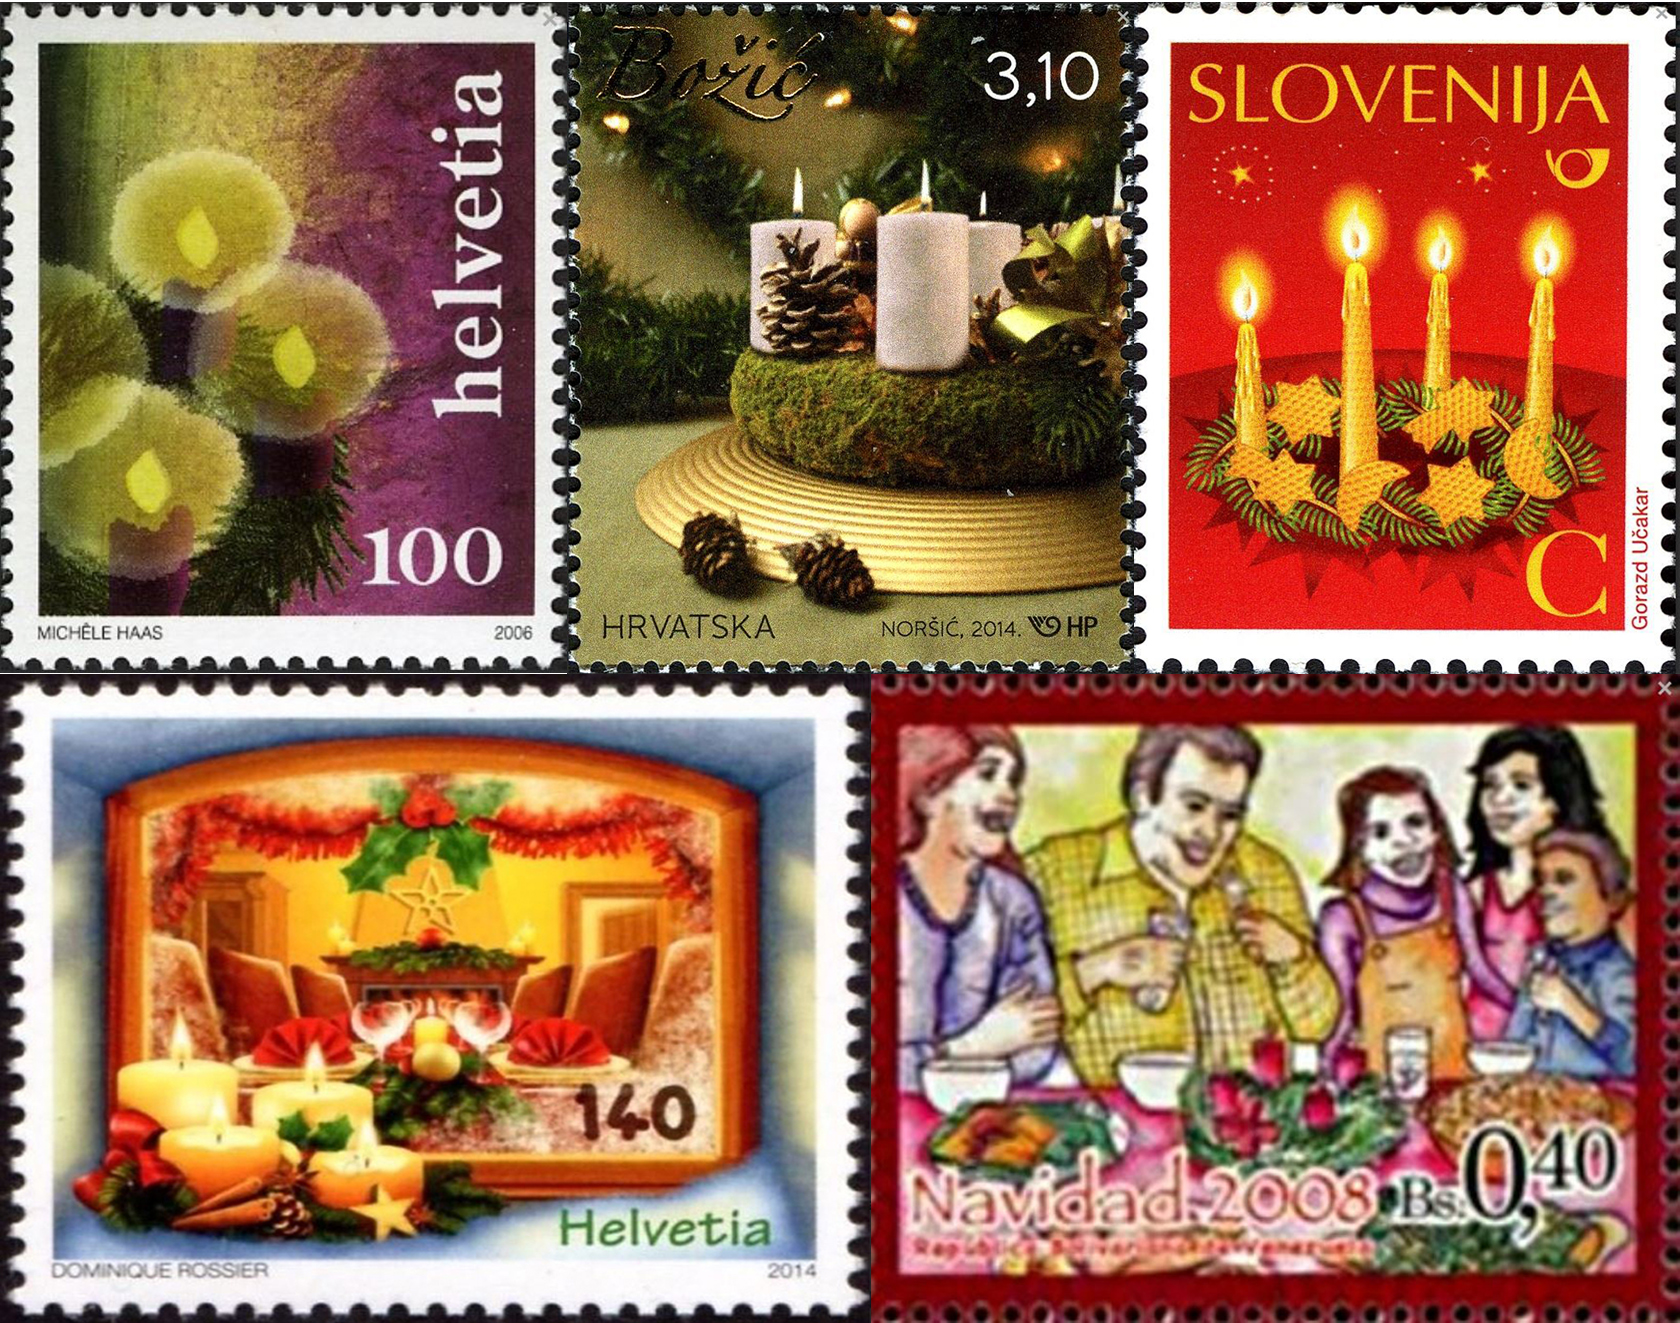 Adventskränze auf Briefmarken